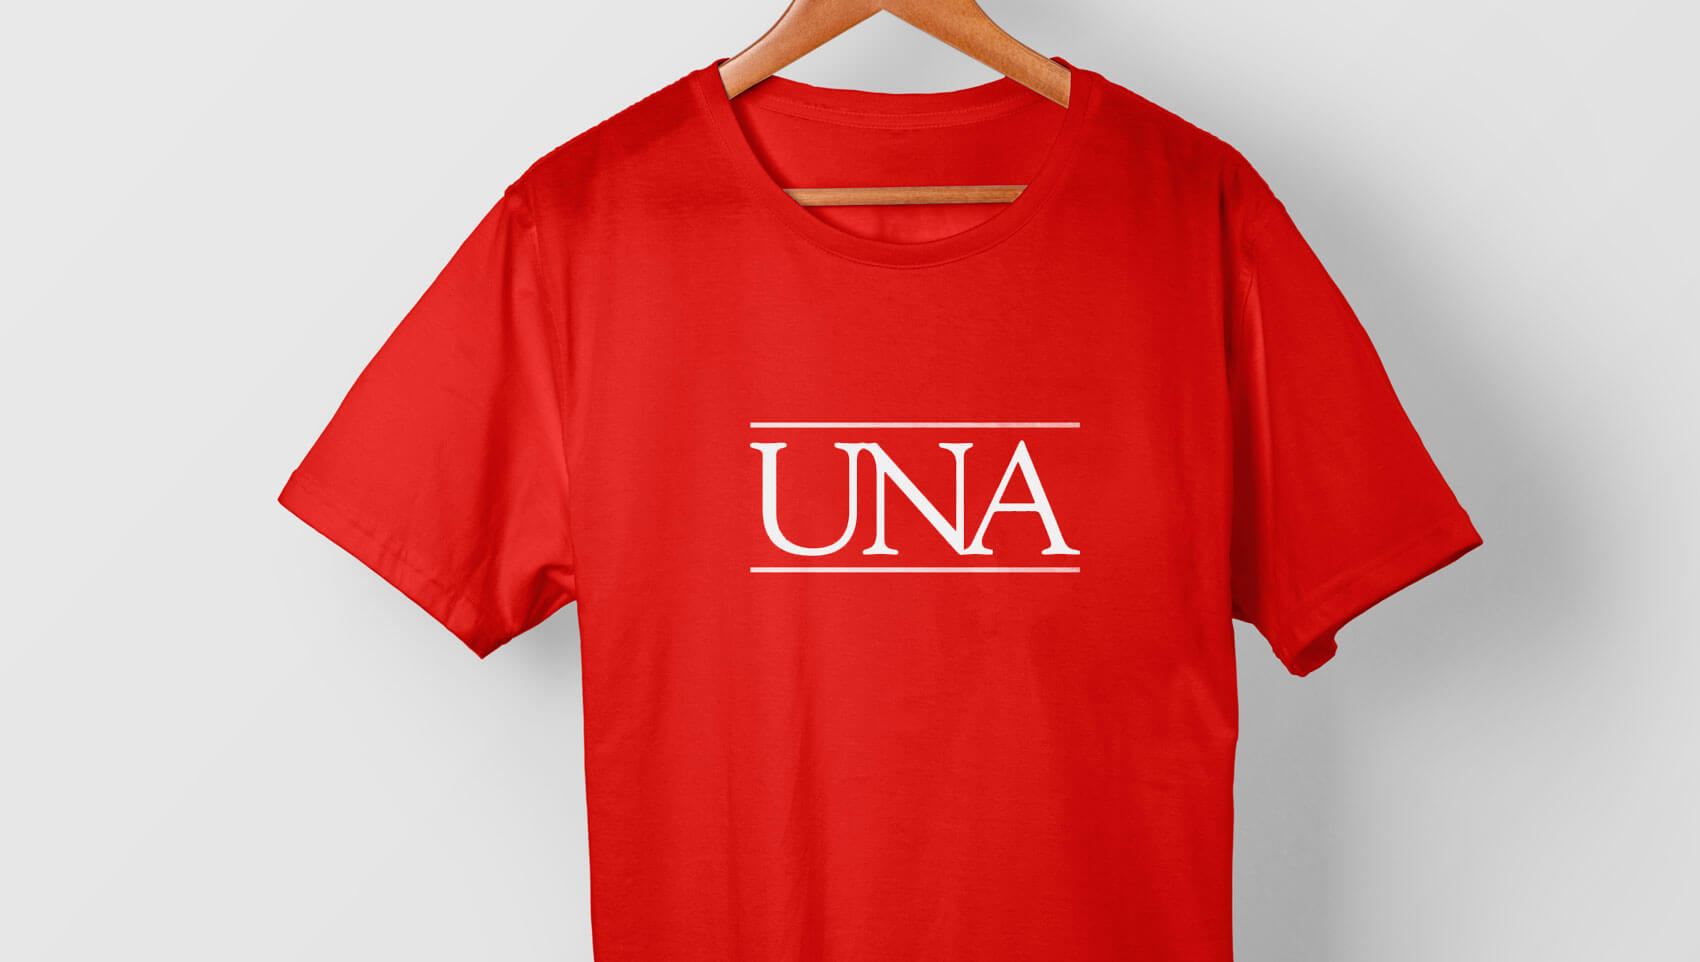 Galeria-UNA-camiseta-Slider